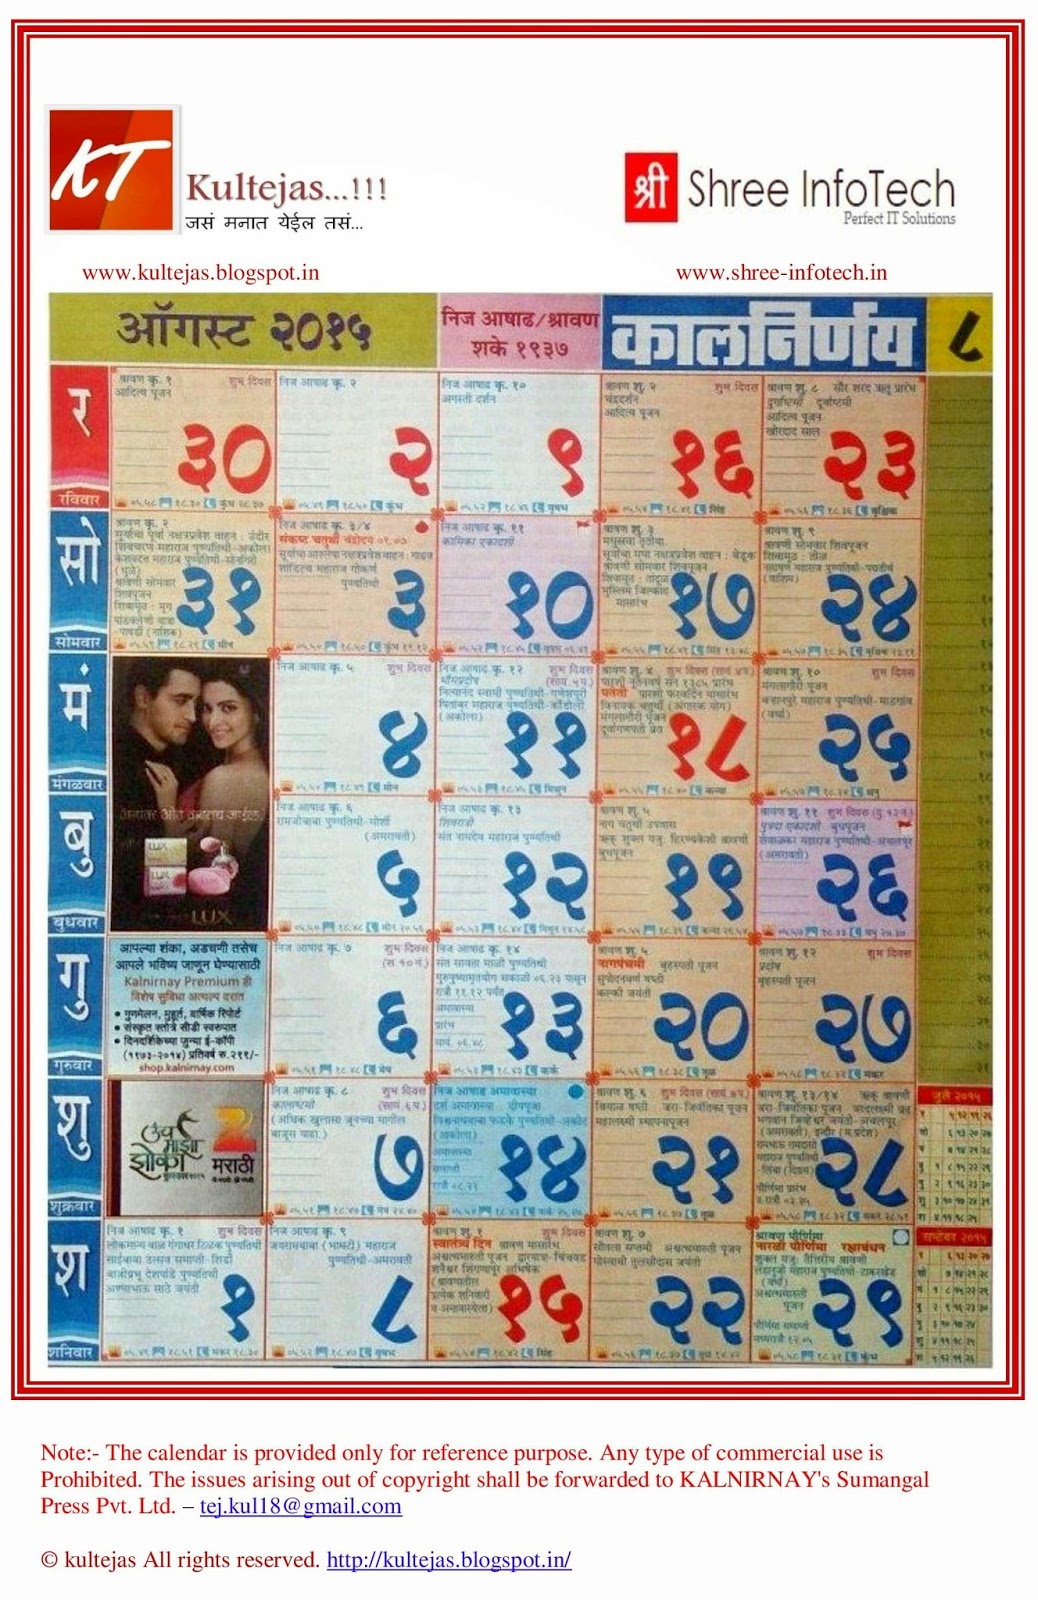 marathi-kalnirnay-calendar-2015-free-download-marathi-calendars